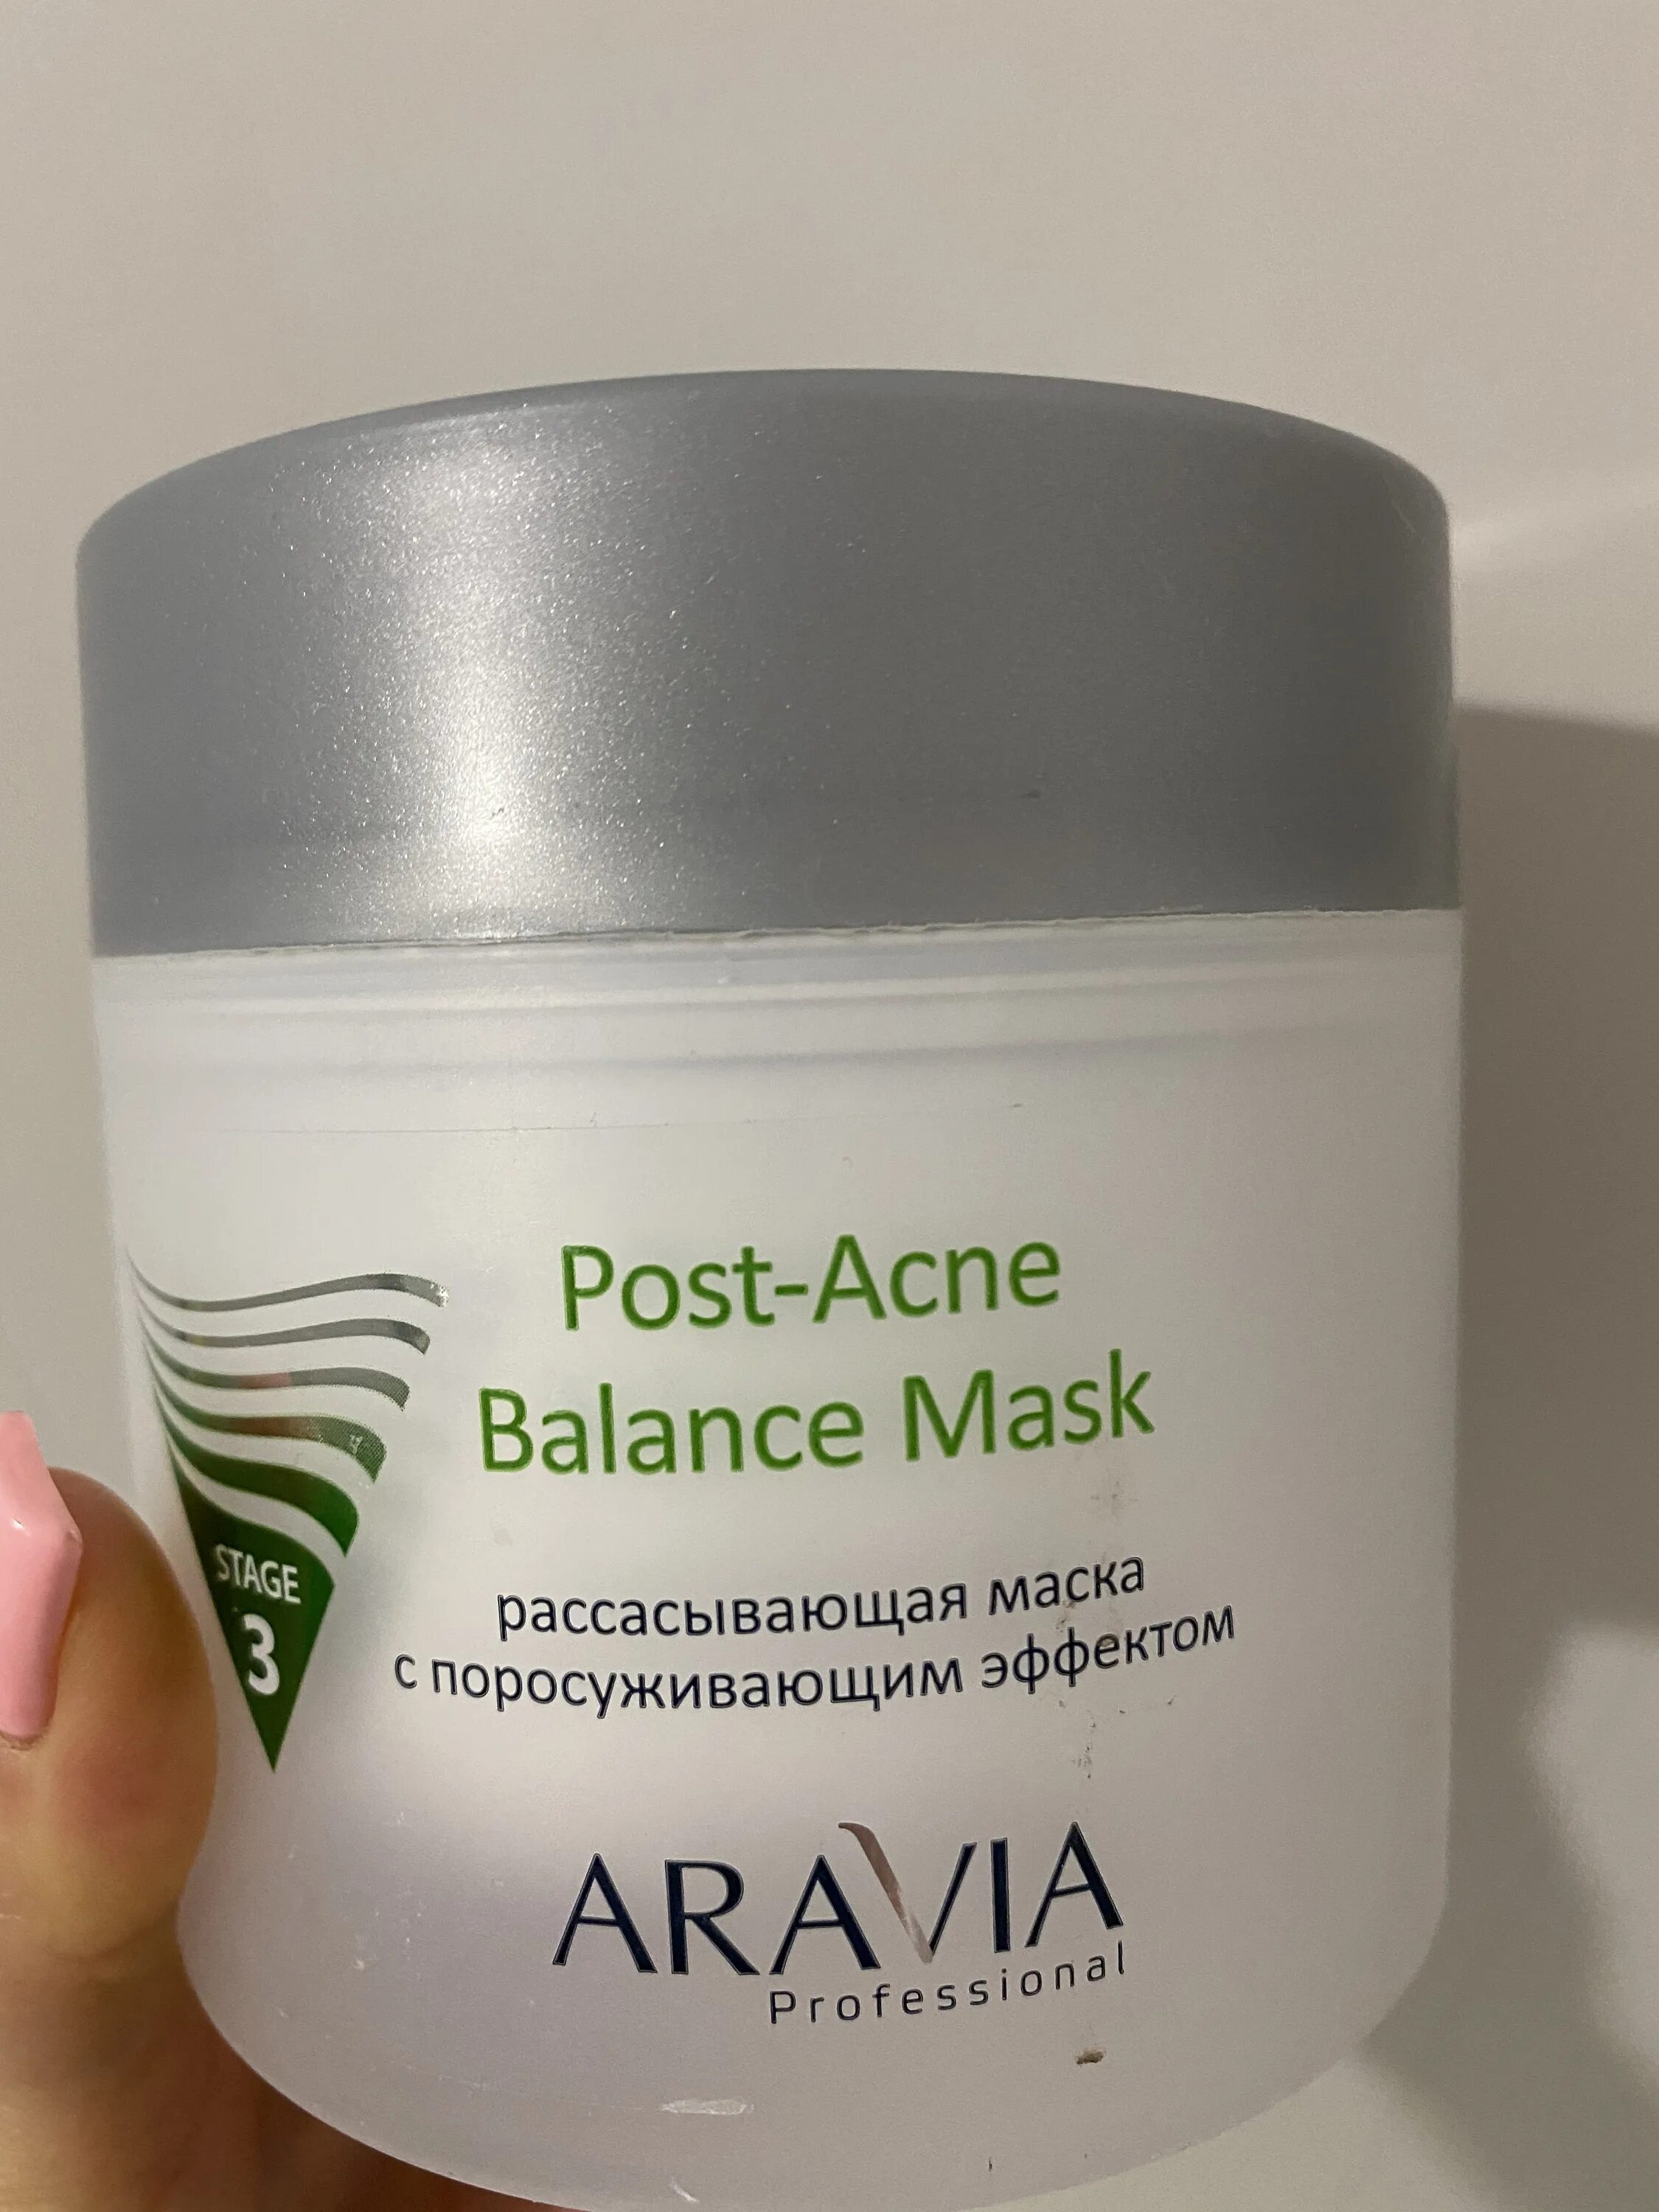 Аравия маска поросуживающая. Aravia Post acne Balance Mask. Маска Aravia Anti-acne. Аравия рассасывающая маска с поросуживающим эффектом. Аравия от пигментации.